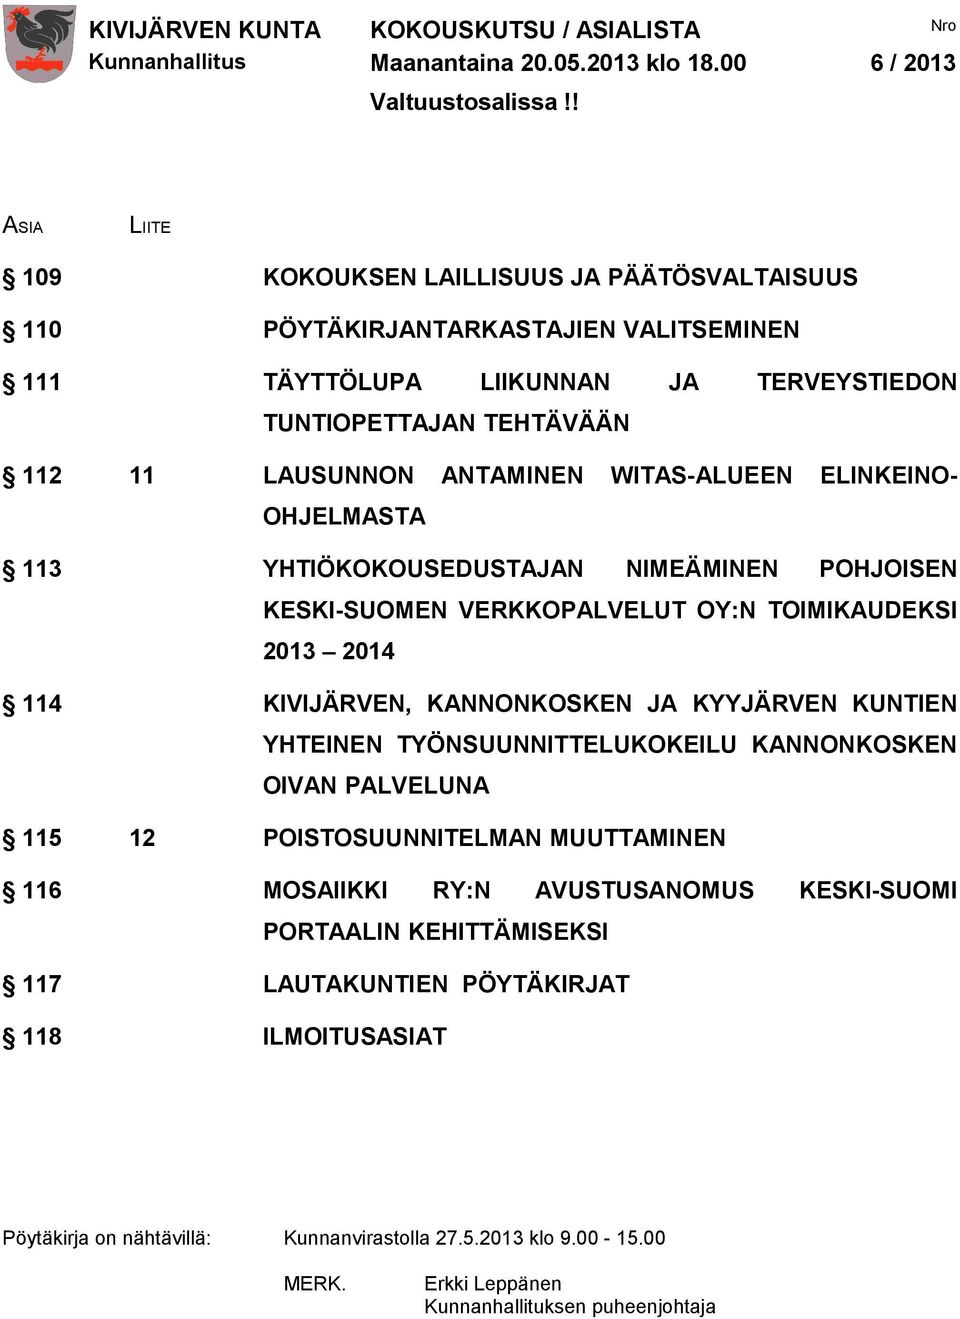 ANTAMINEN WITAS-ALUEEN ELINKEINO- OHJELMASTA 113 YHTIÖKOKOUSEDUSTAJAN NIMEÄMINEN POHJOISEN KESKI-SUOMEN VERKKOPALVELUT OY:N TOIMIKAUDEKSI 2013 2014 114 KIVIJÄRVEN, KANNONKOSKEN JA KYYJÄRVEN KUNTIEN